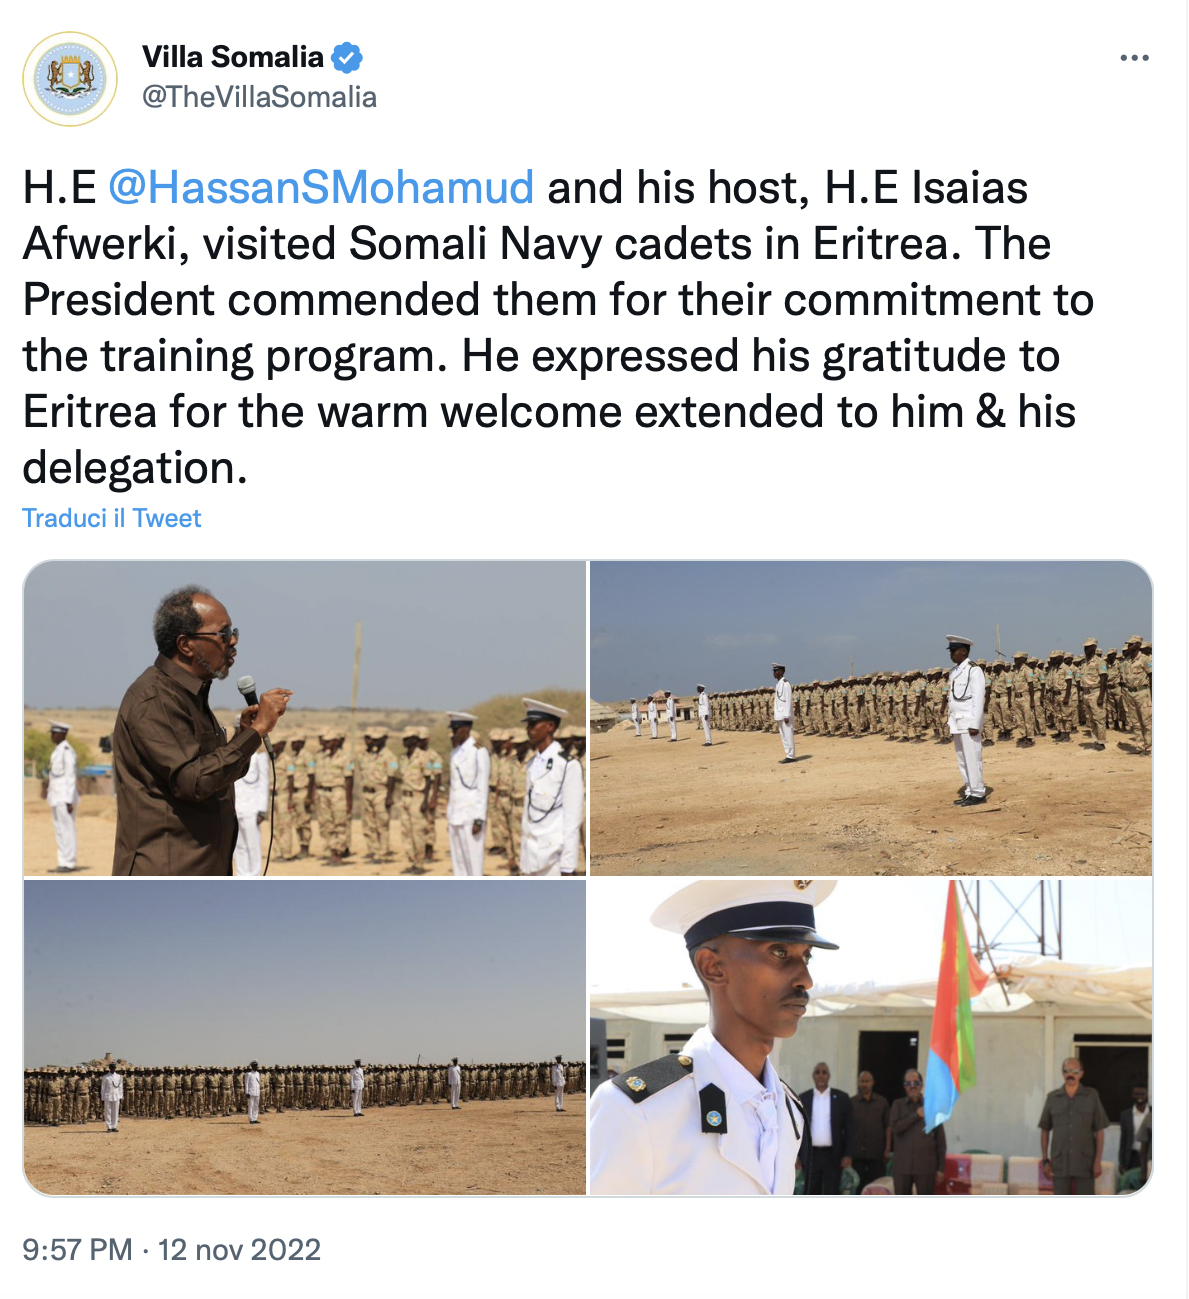 La visita ufficiale del Presidente Hassan Sceicco Mahmoud ai cadetti somali di stanza in Eritrea.